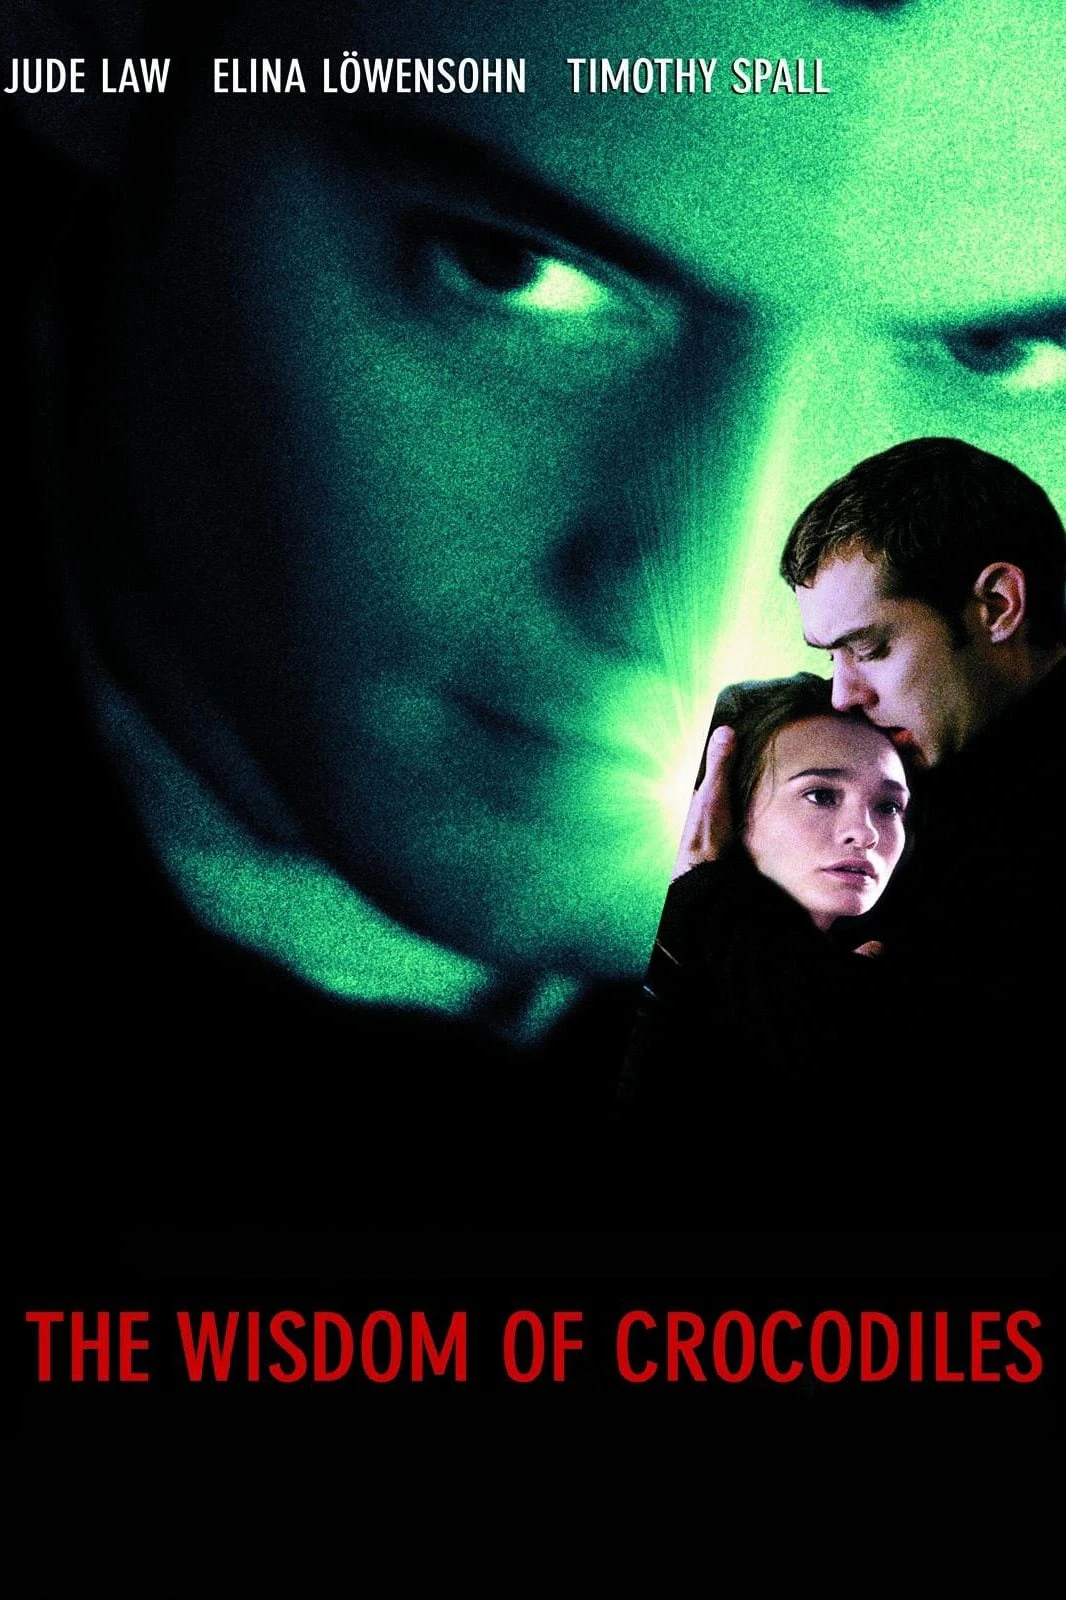 The Wisdom of Crocodiles | The Wisdom of Crocodiles (1998)